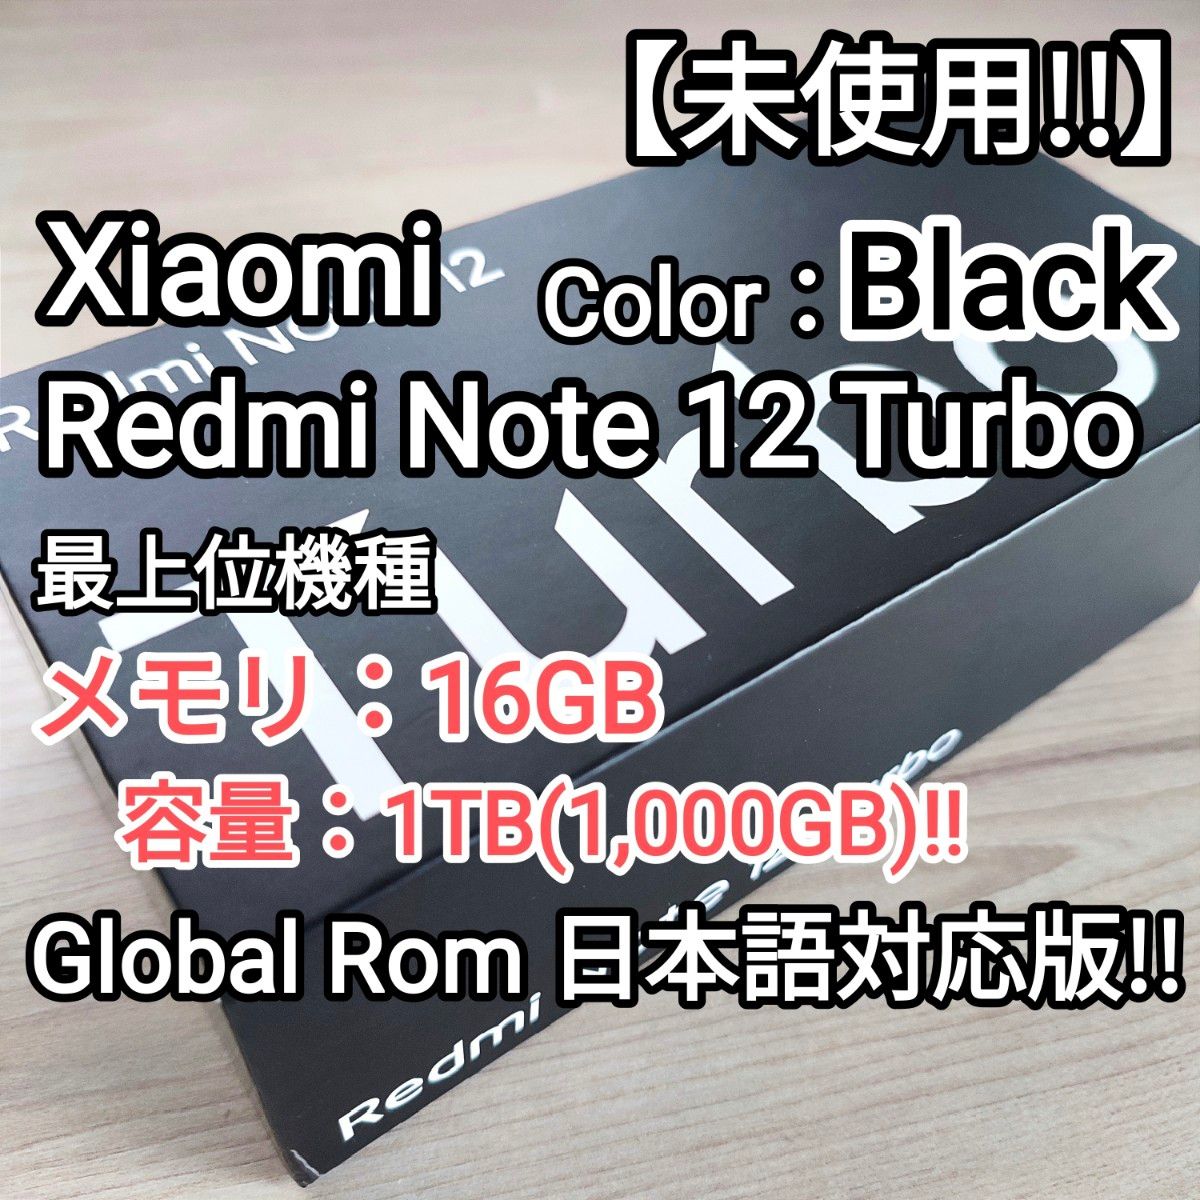 【未使用!!】Xiaomi Redmi Note 12 Turbo 最強スペック16GB/1TB !! 人気のブラック